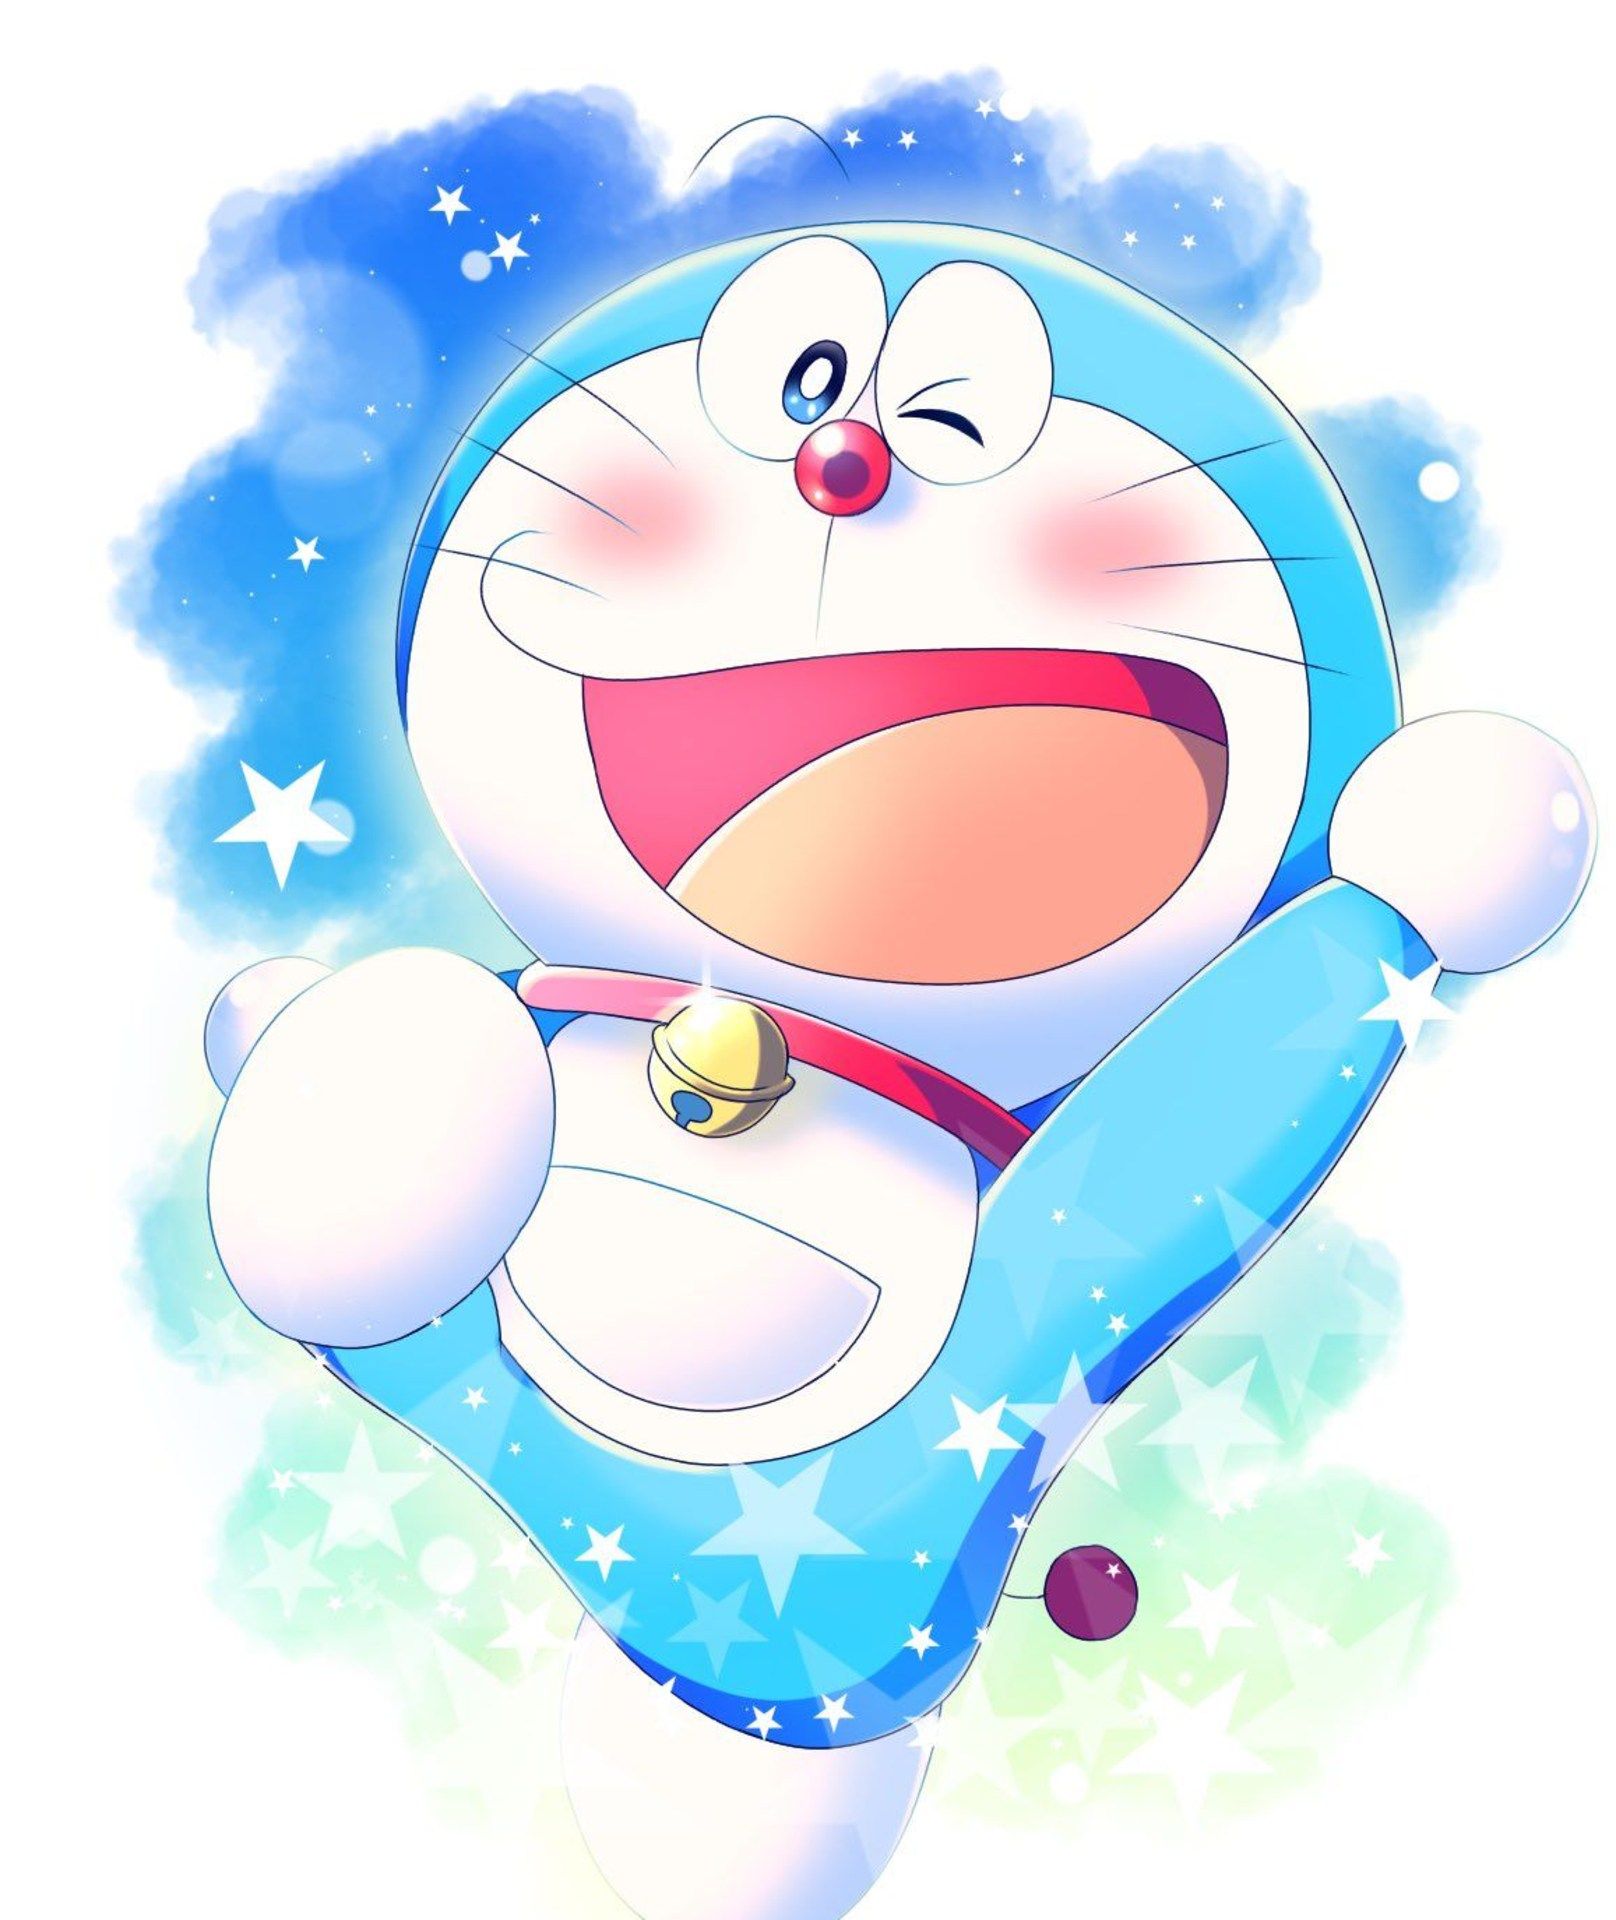 Bạn yêu thích nhân vật Doraemon và muốn có một hình ảnh avatar độc đáo? Hãy xem ngay hình ảnh avatar Doraemon đẹp đầy màu sắc tại đây!